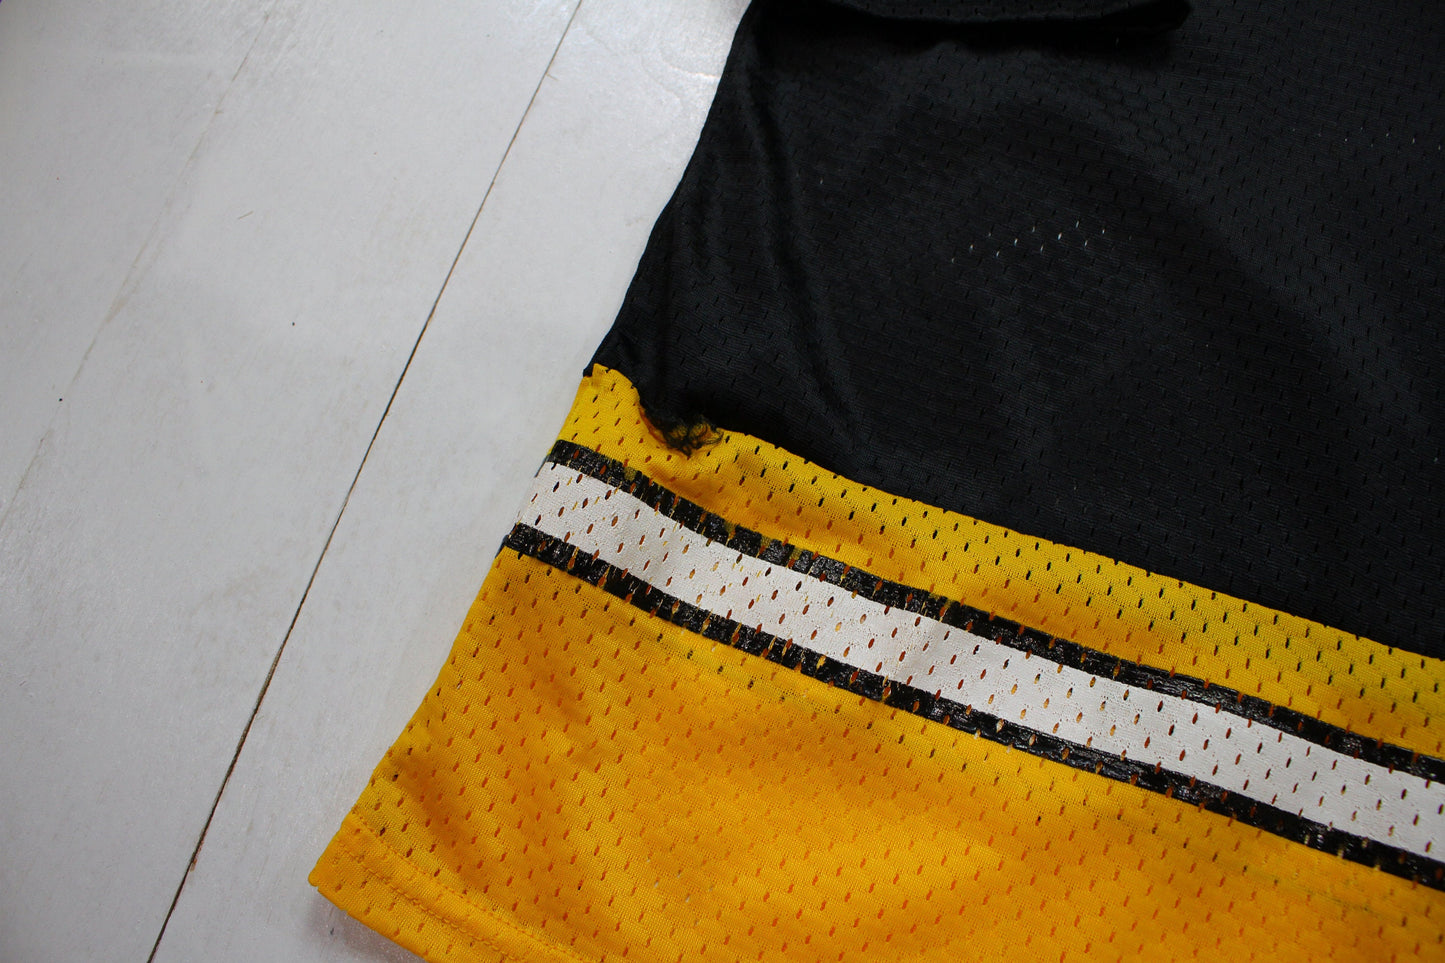 1990s Athletic Knit Blank Black Hockey Jersey Size M